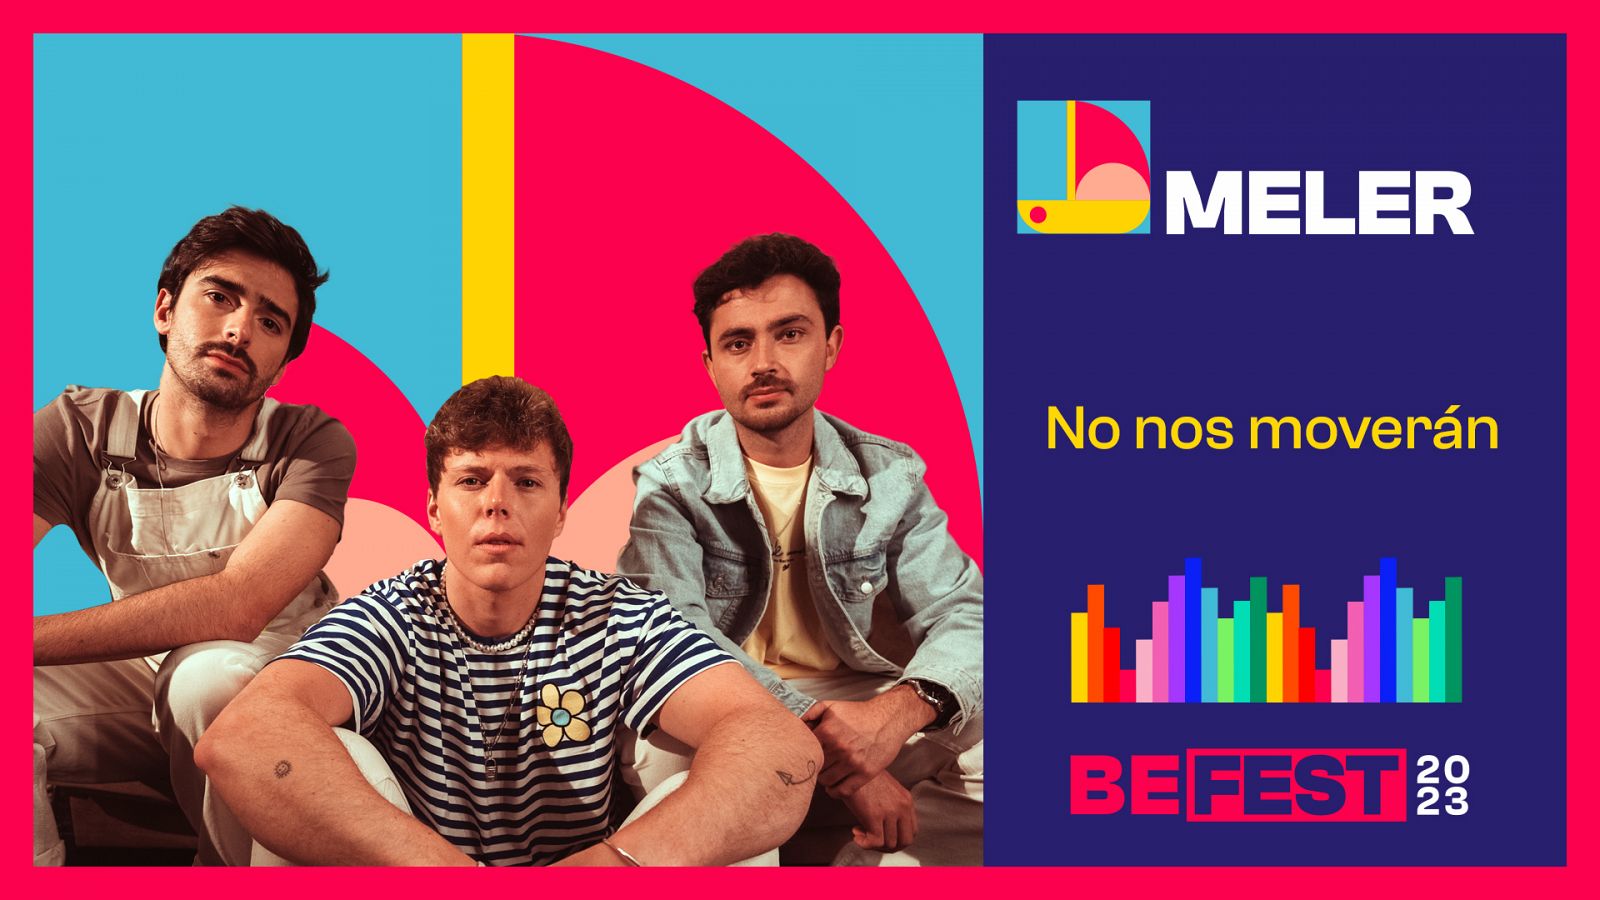 Benidorm Fest 2023: "No nos moverán", vídeo musical de la canción de Meler